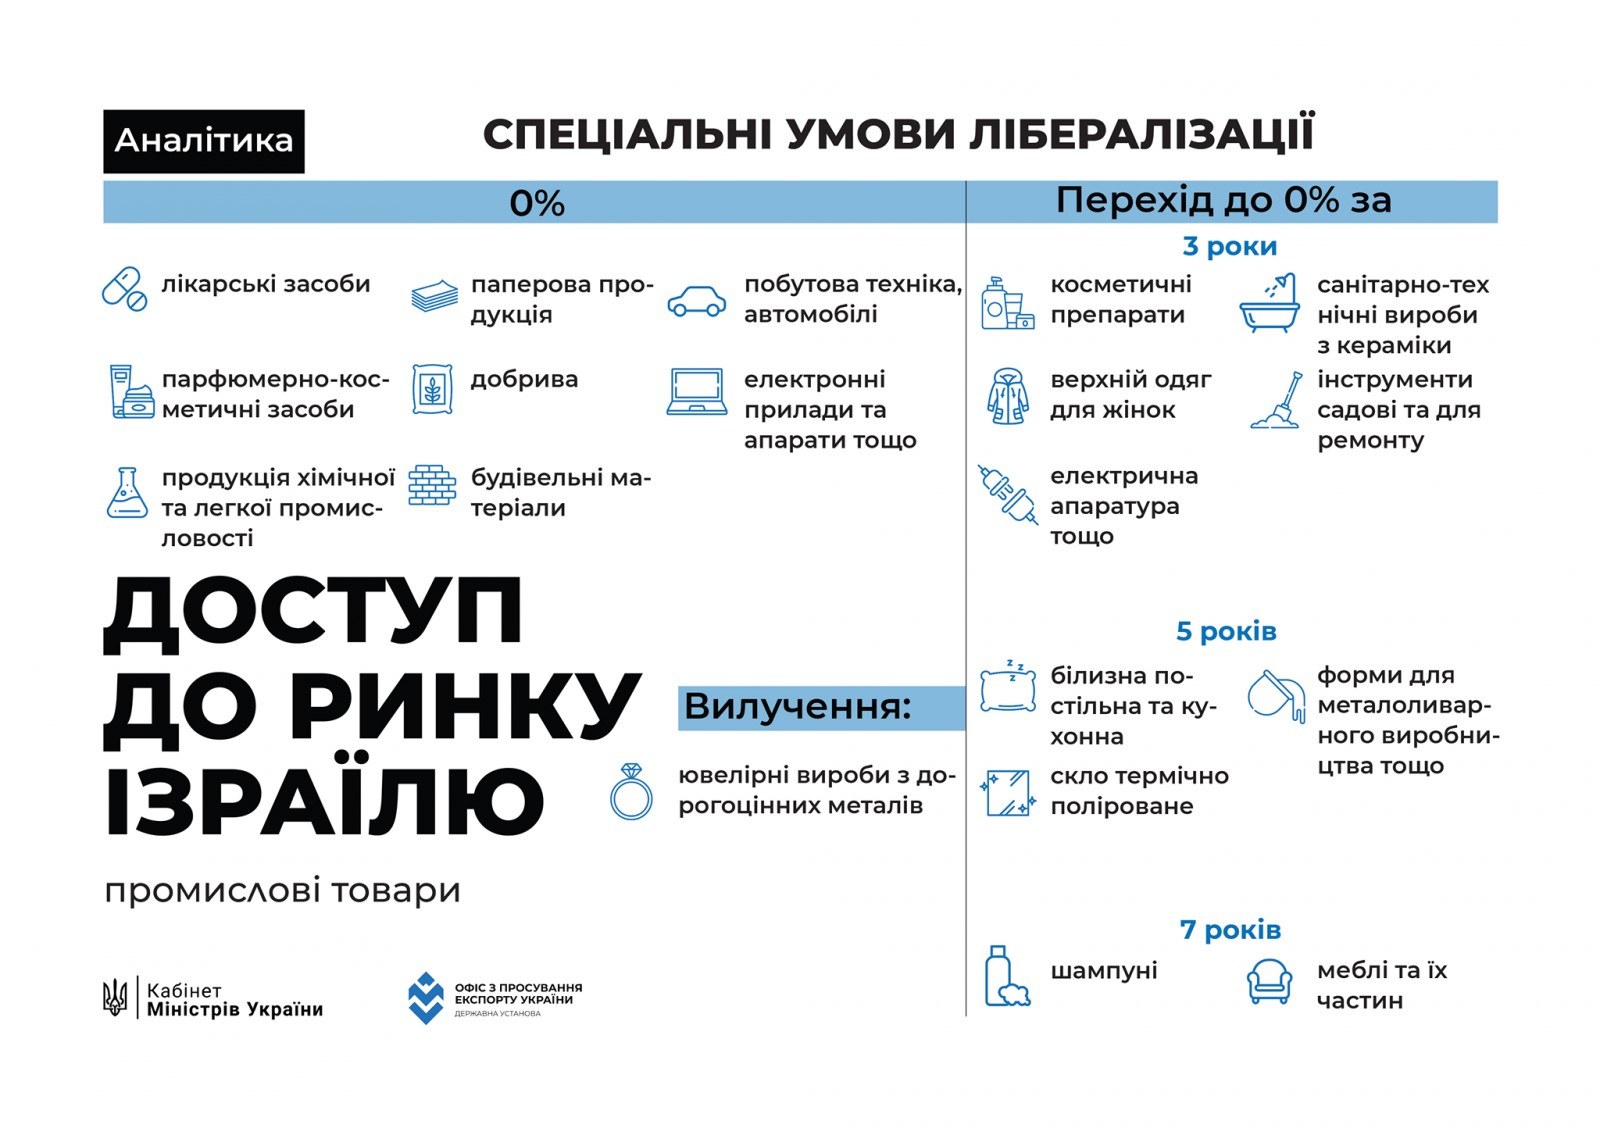 Угода про зону вільної торгівлі між Україною та Державою Ізраїль в інфографіці